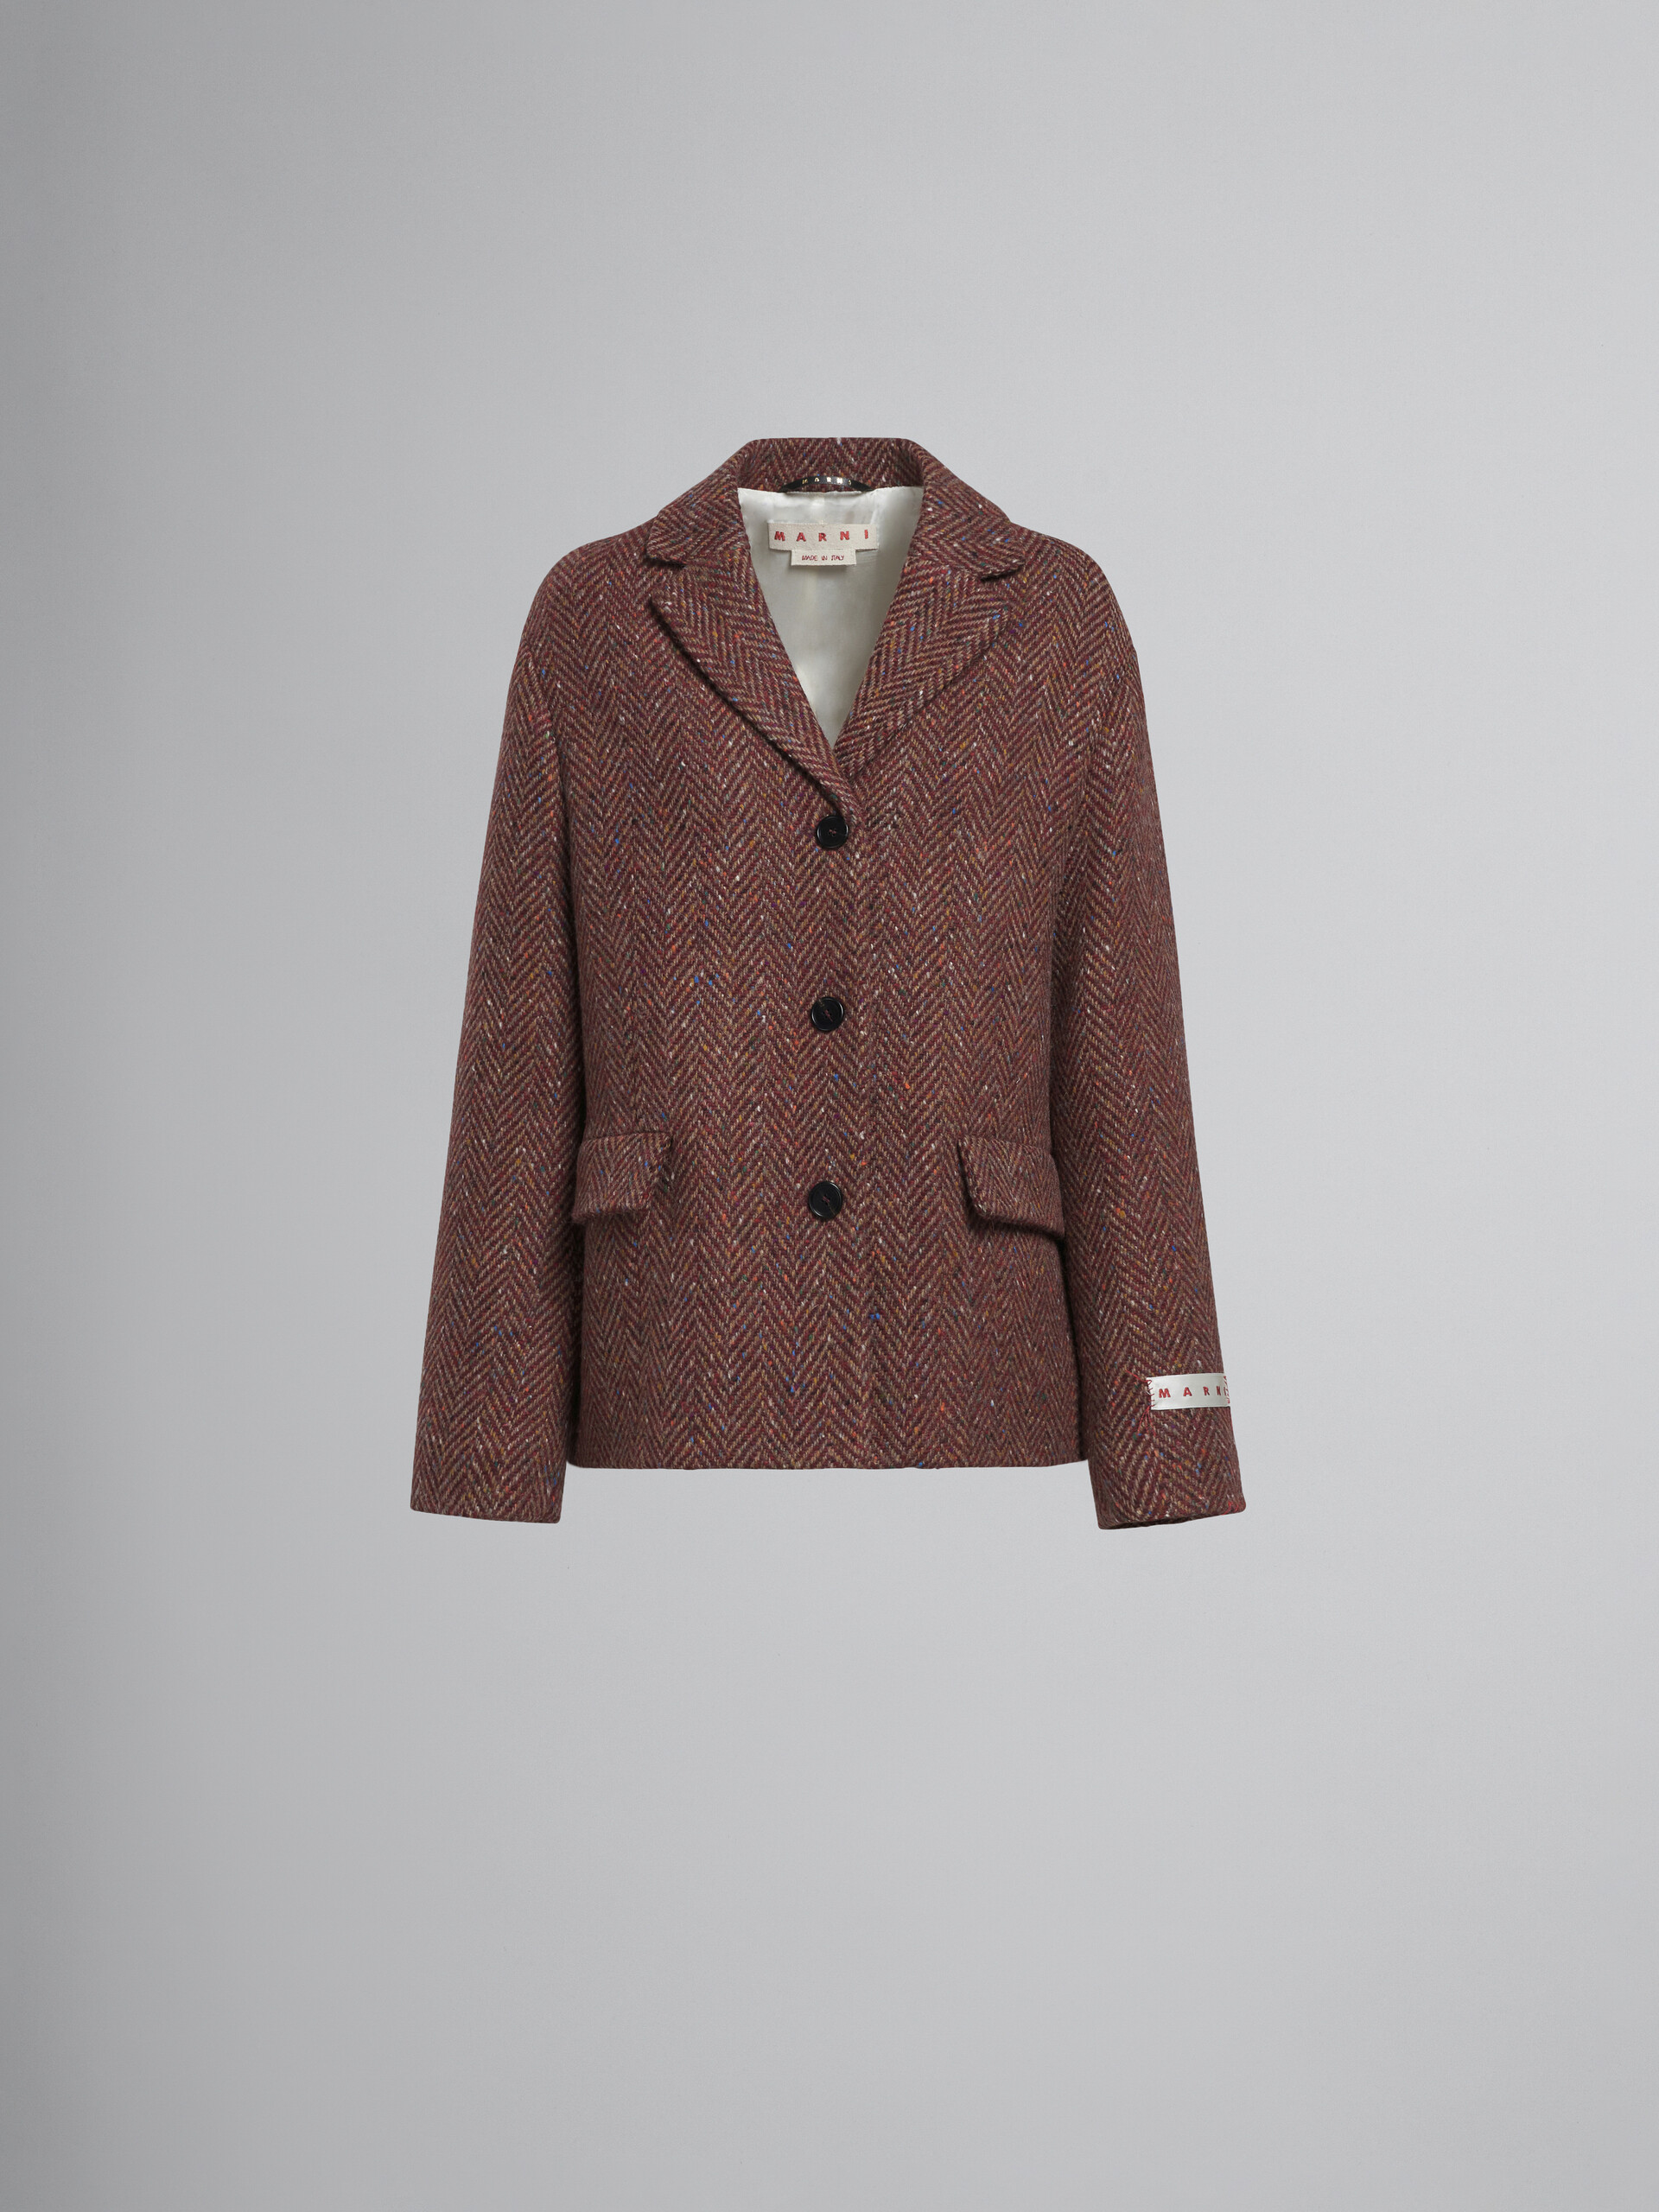 Burgundy wool chevron jacket - Jackets - Image 1